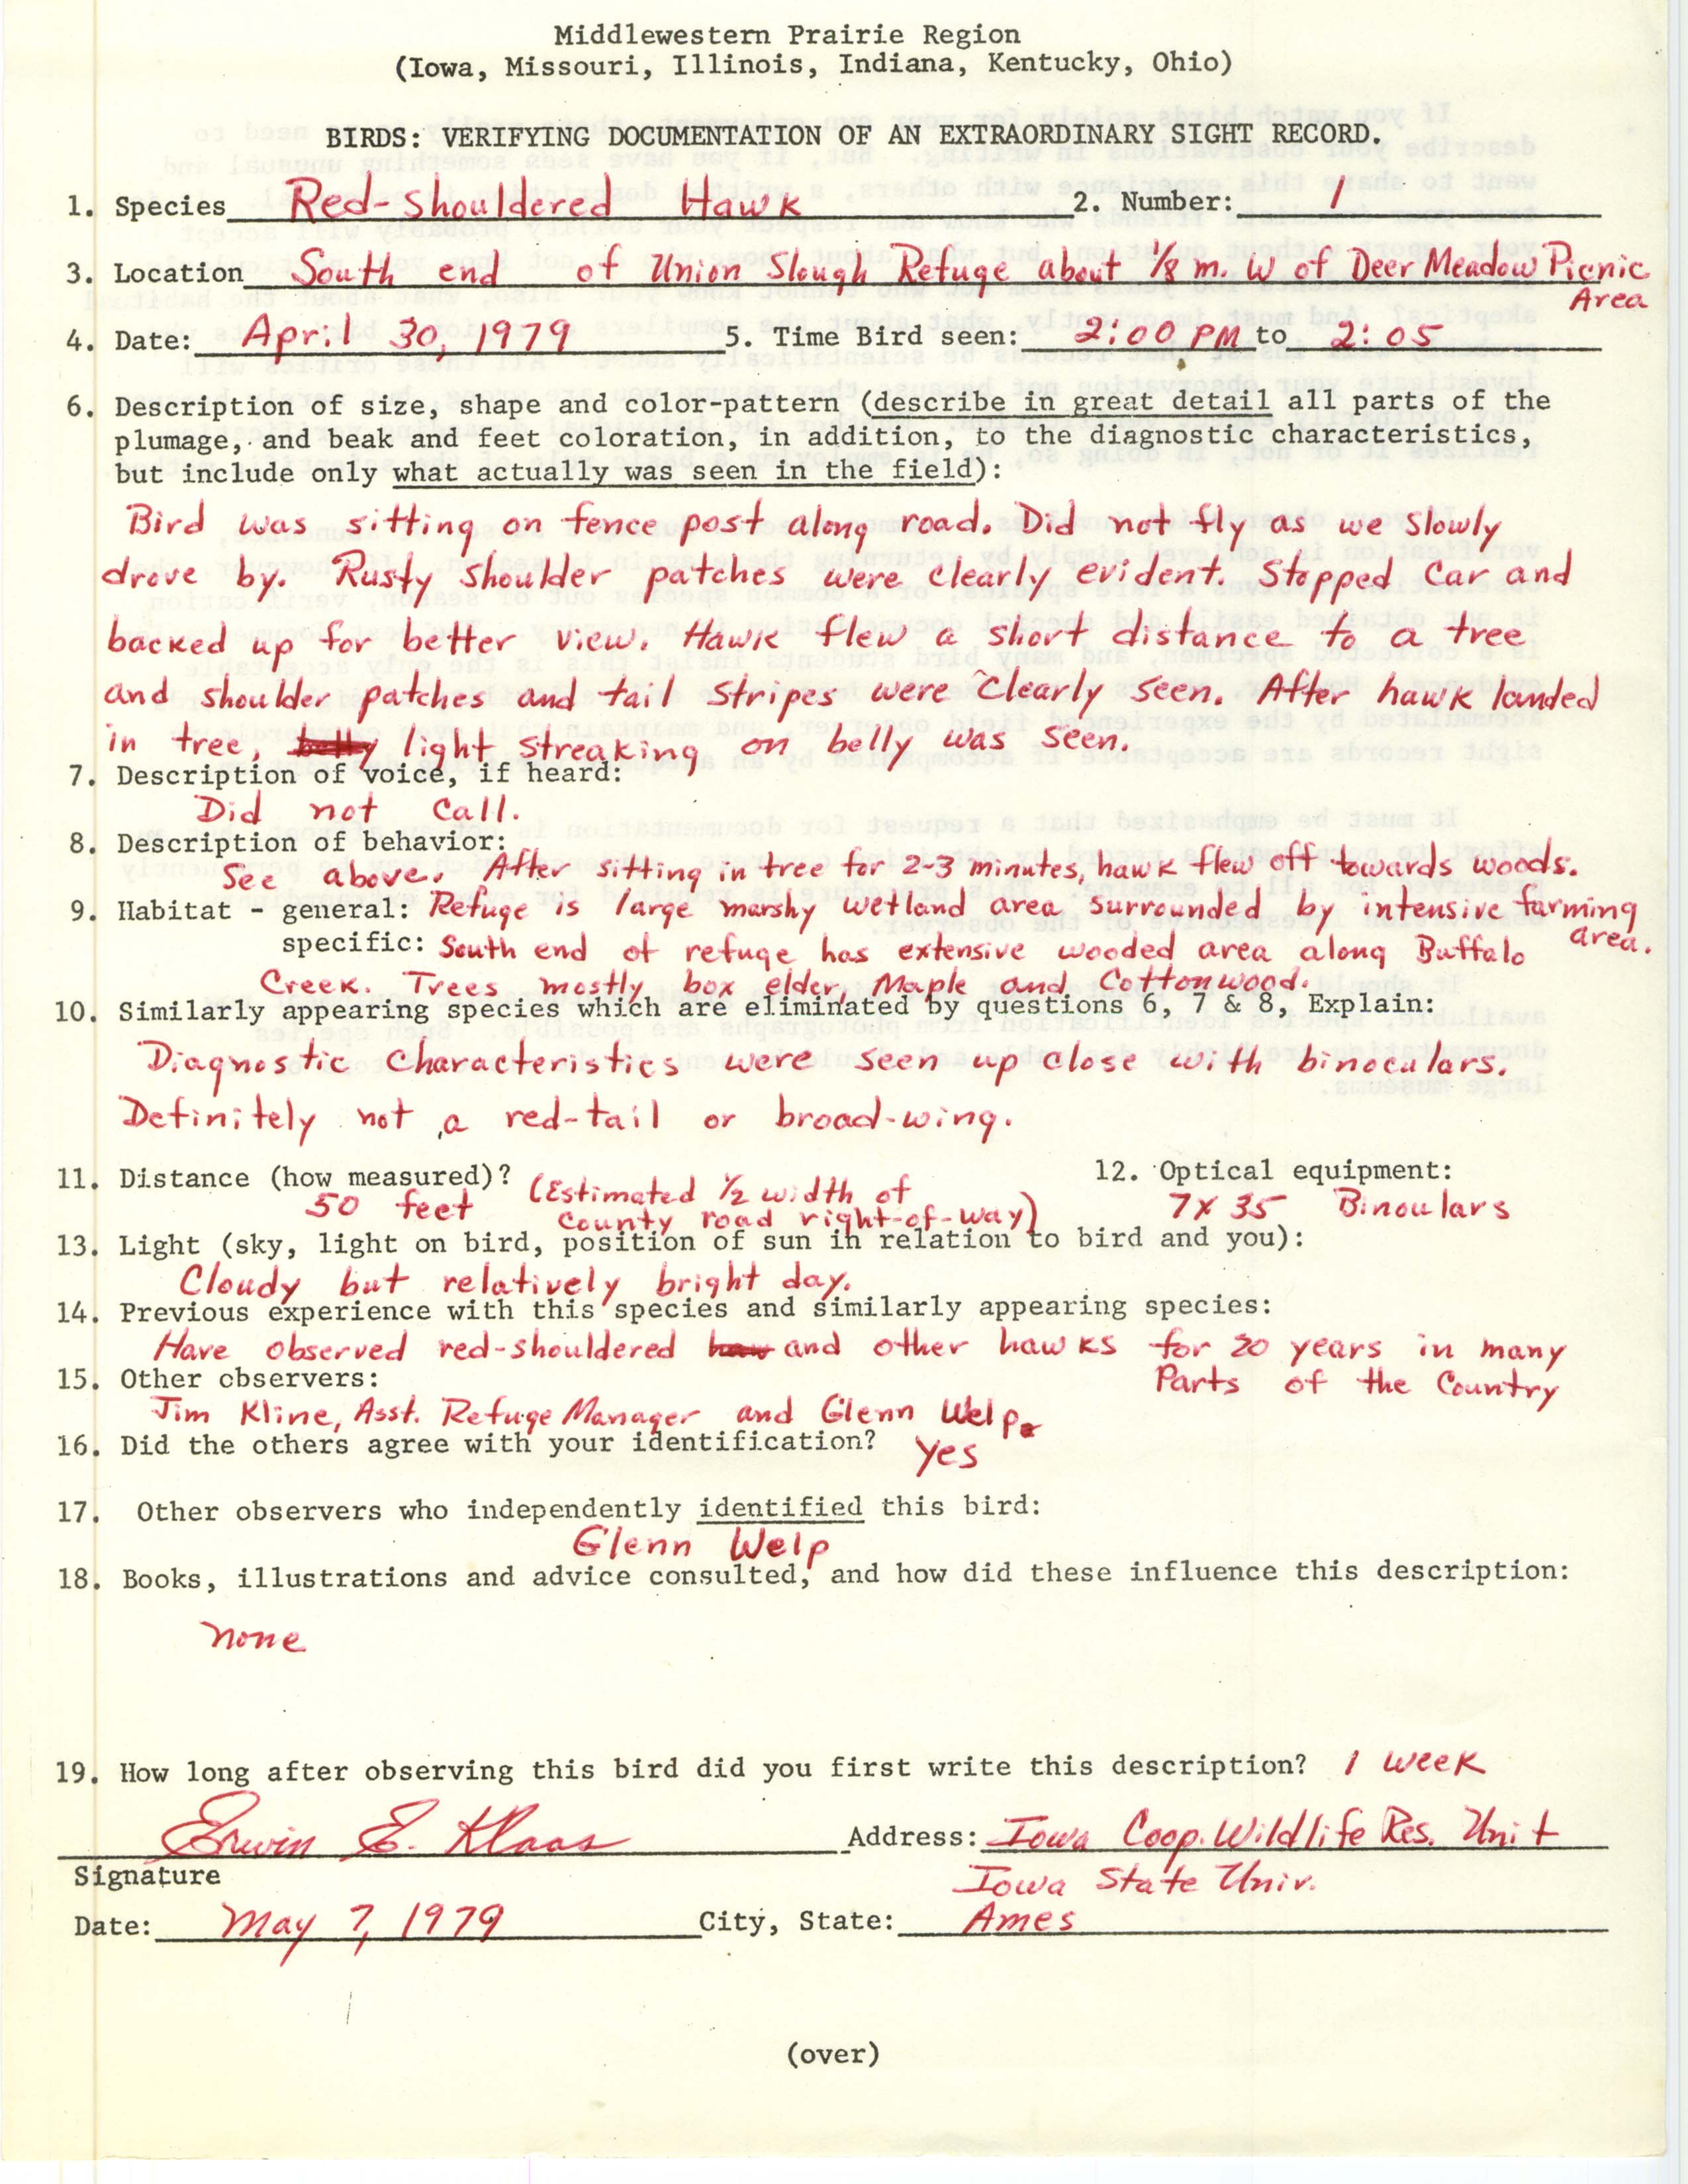 Rare bird documentation form for Red-shouldered Hawk at Union Slough Refuge, 1979